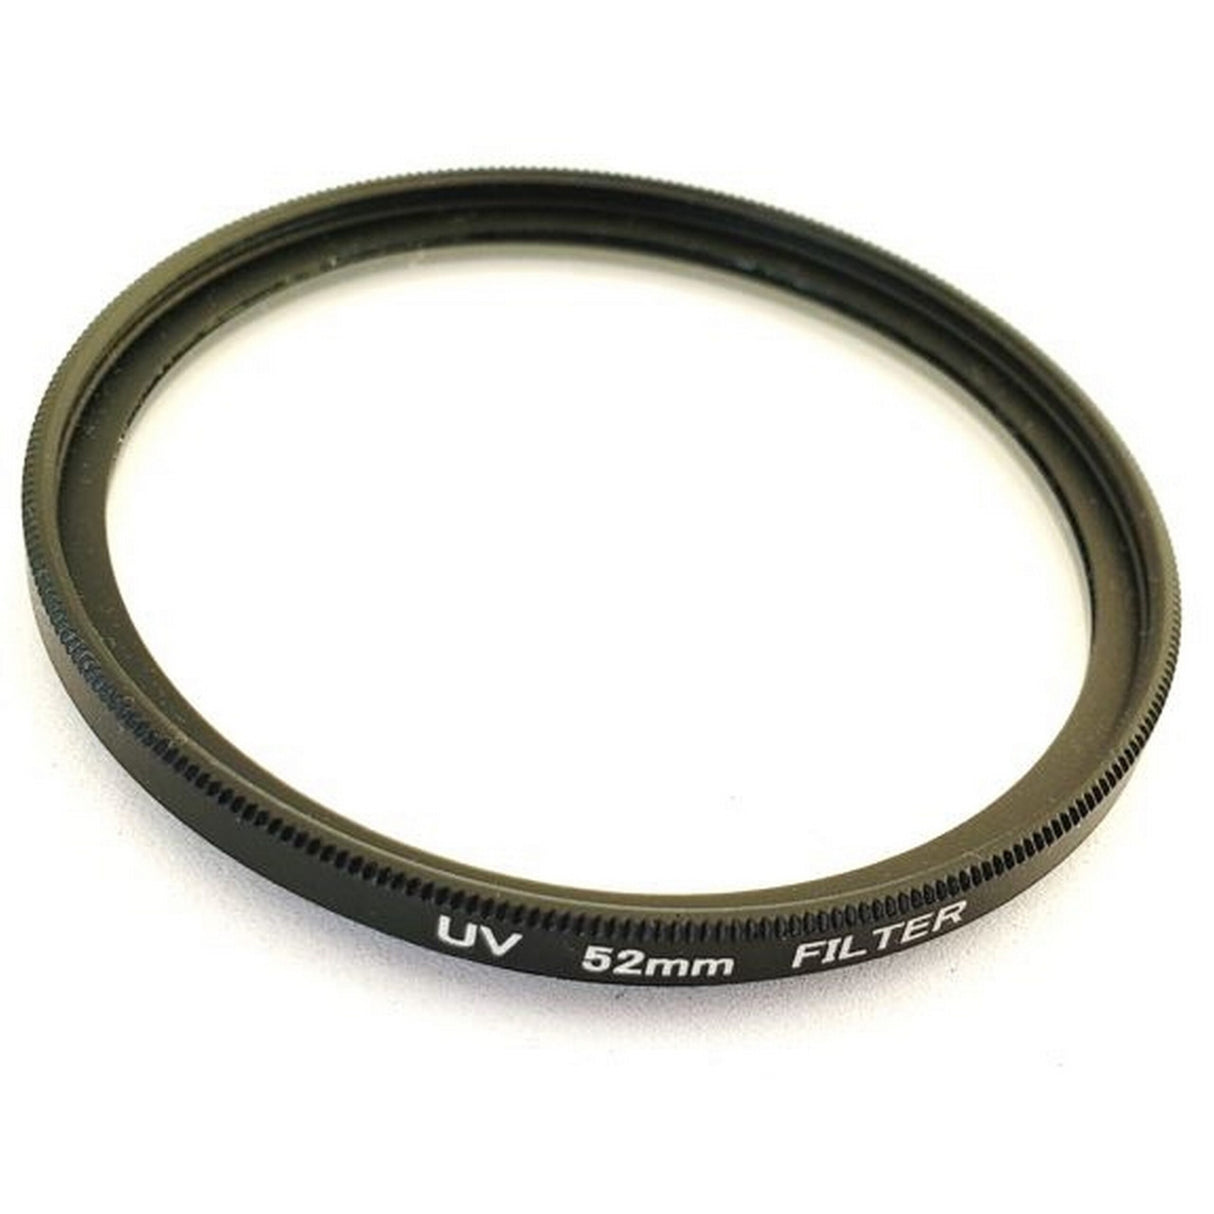 Genustech G-UV52 UV Protector Filter, 52mm